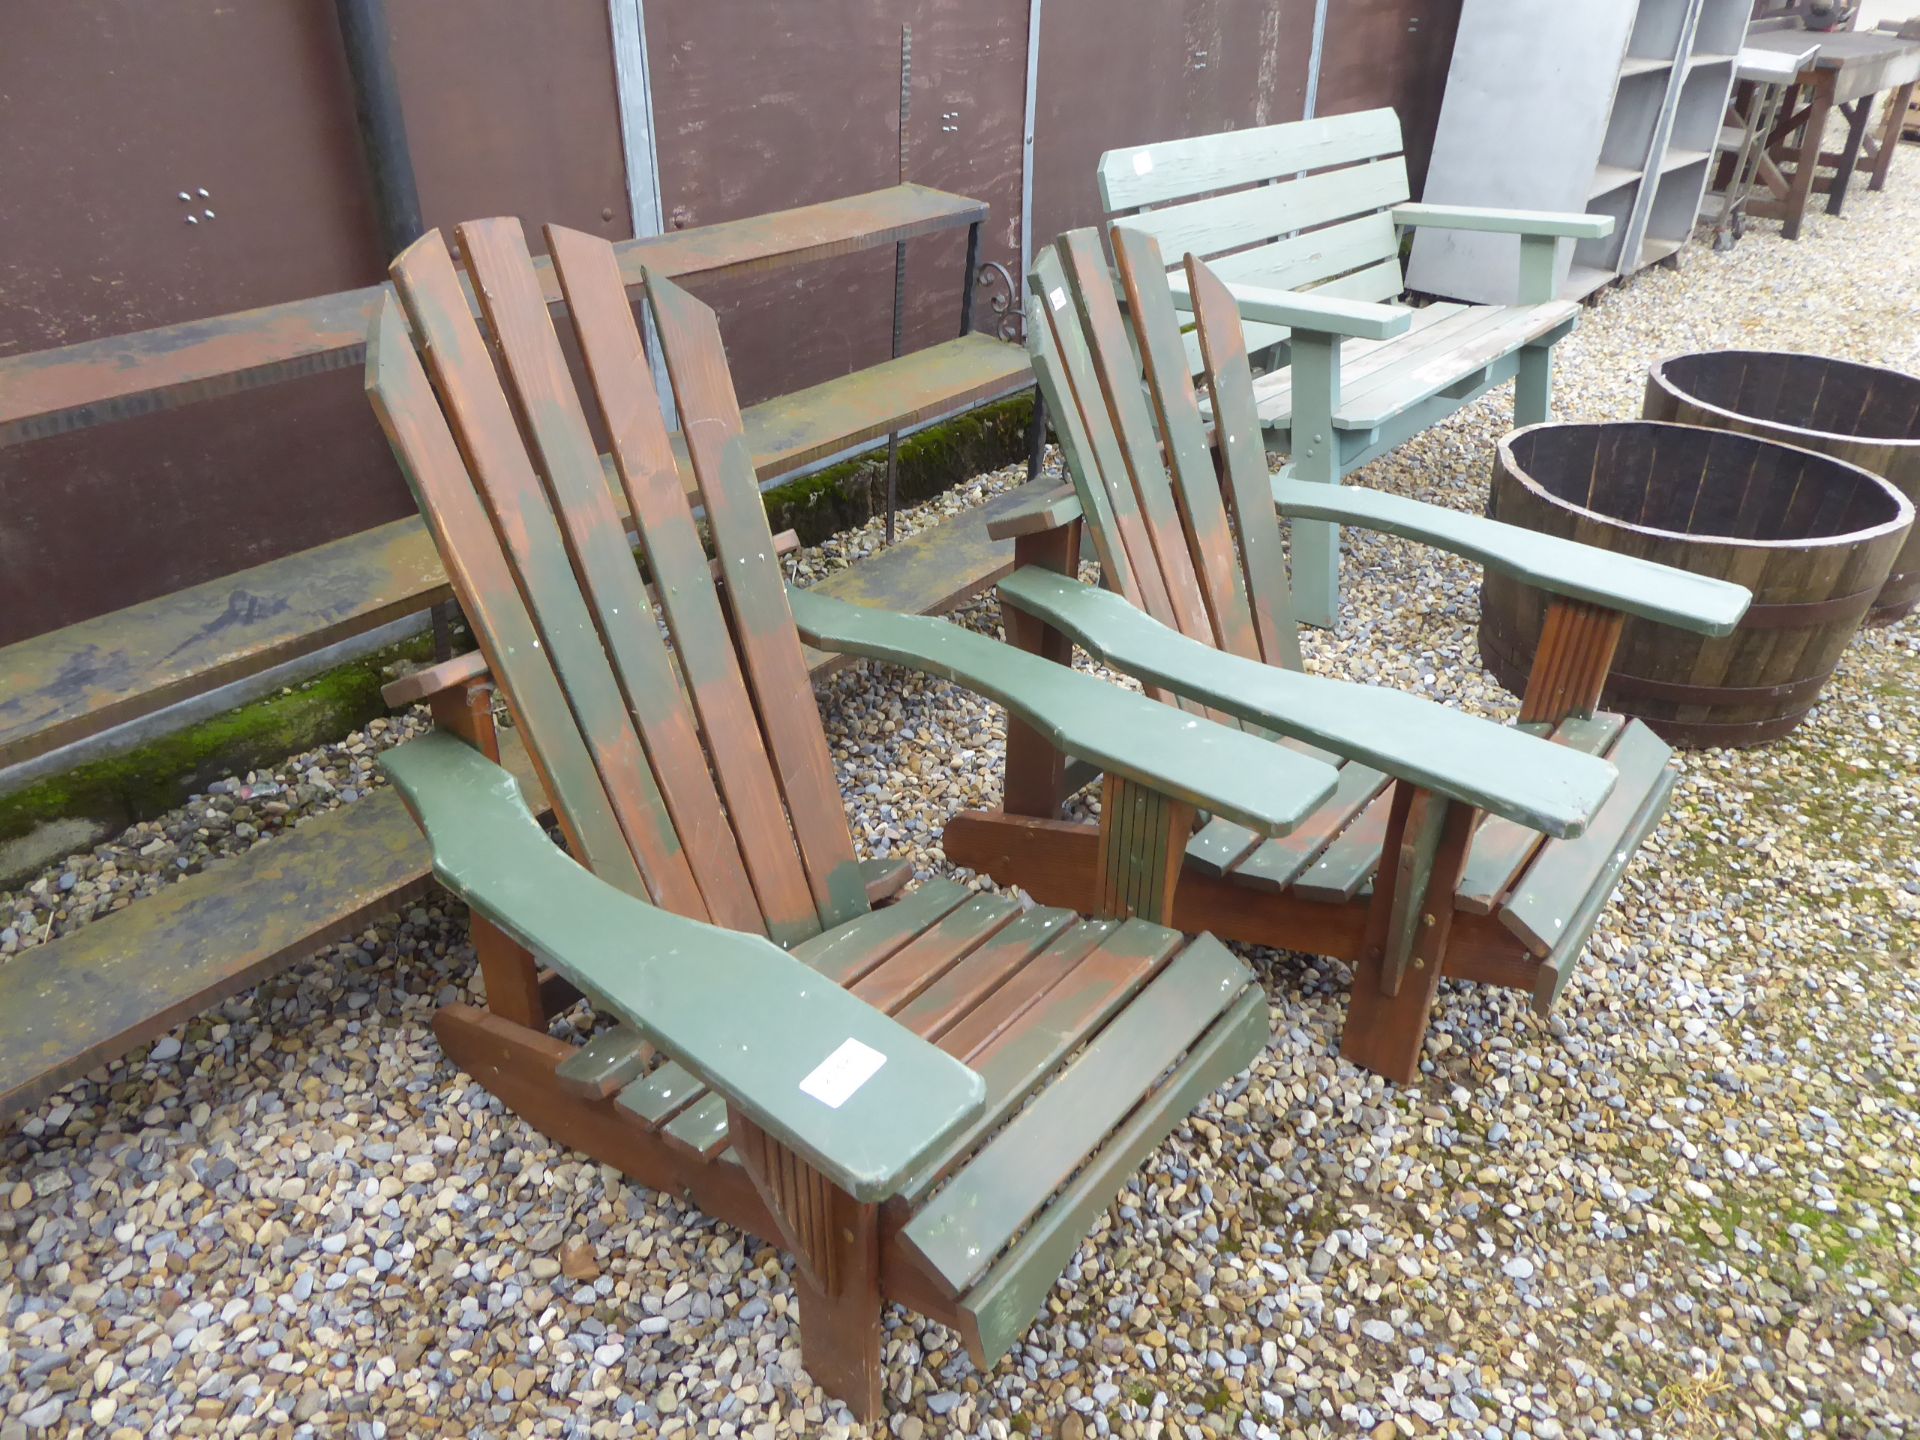 Pair of Adirondack garden chairs